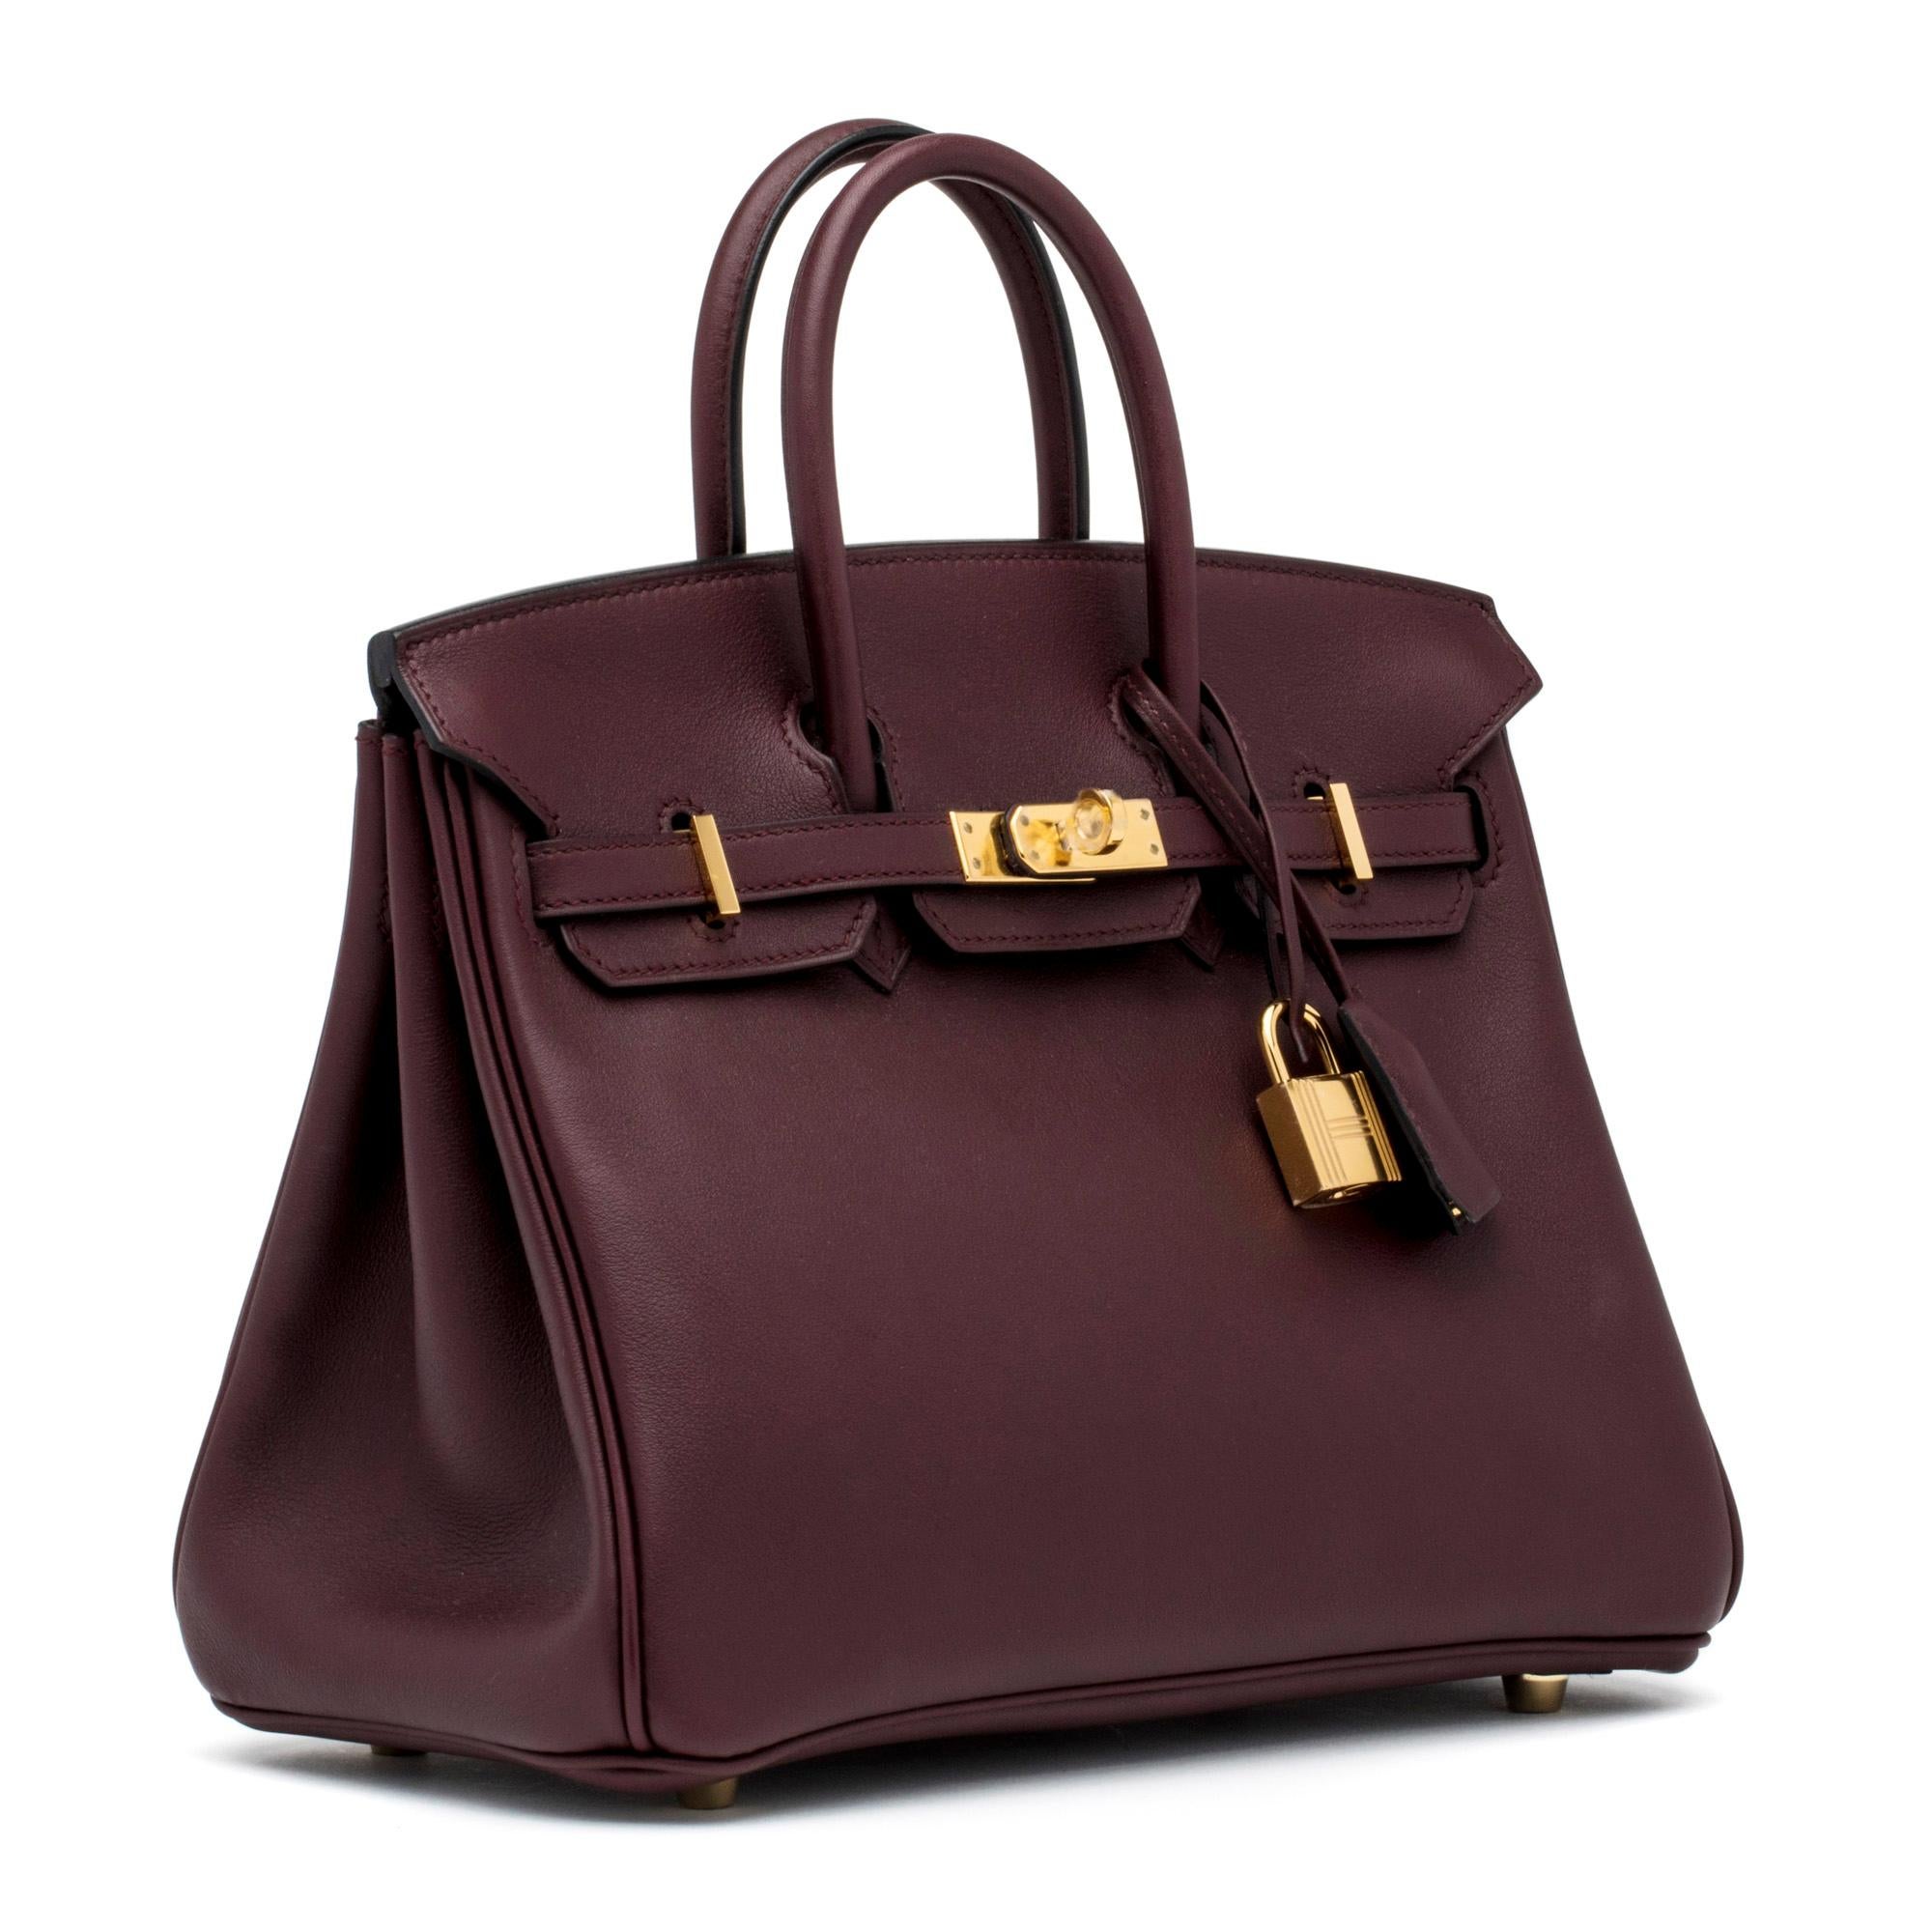 La borsa Birkin di Hermés incarna la quintessenza dello stile e del lusso grazie al suo design impeccabile, alla lavorazione artigianale e al suo significato. Detto questo, è il pezzo più iconico e desiderato della collezione di borse Hermés.